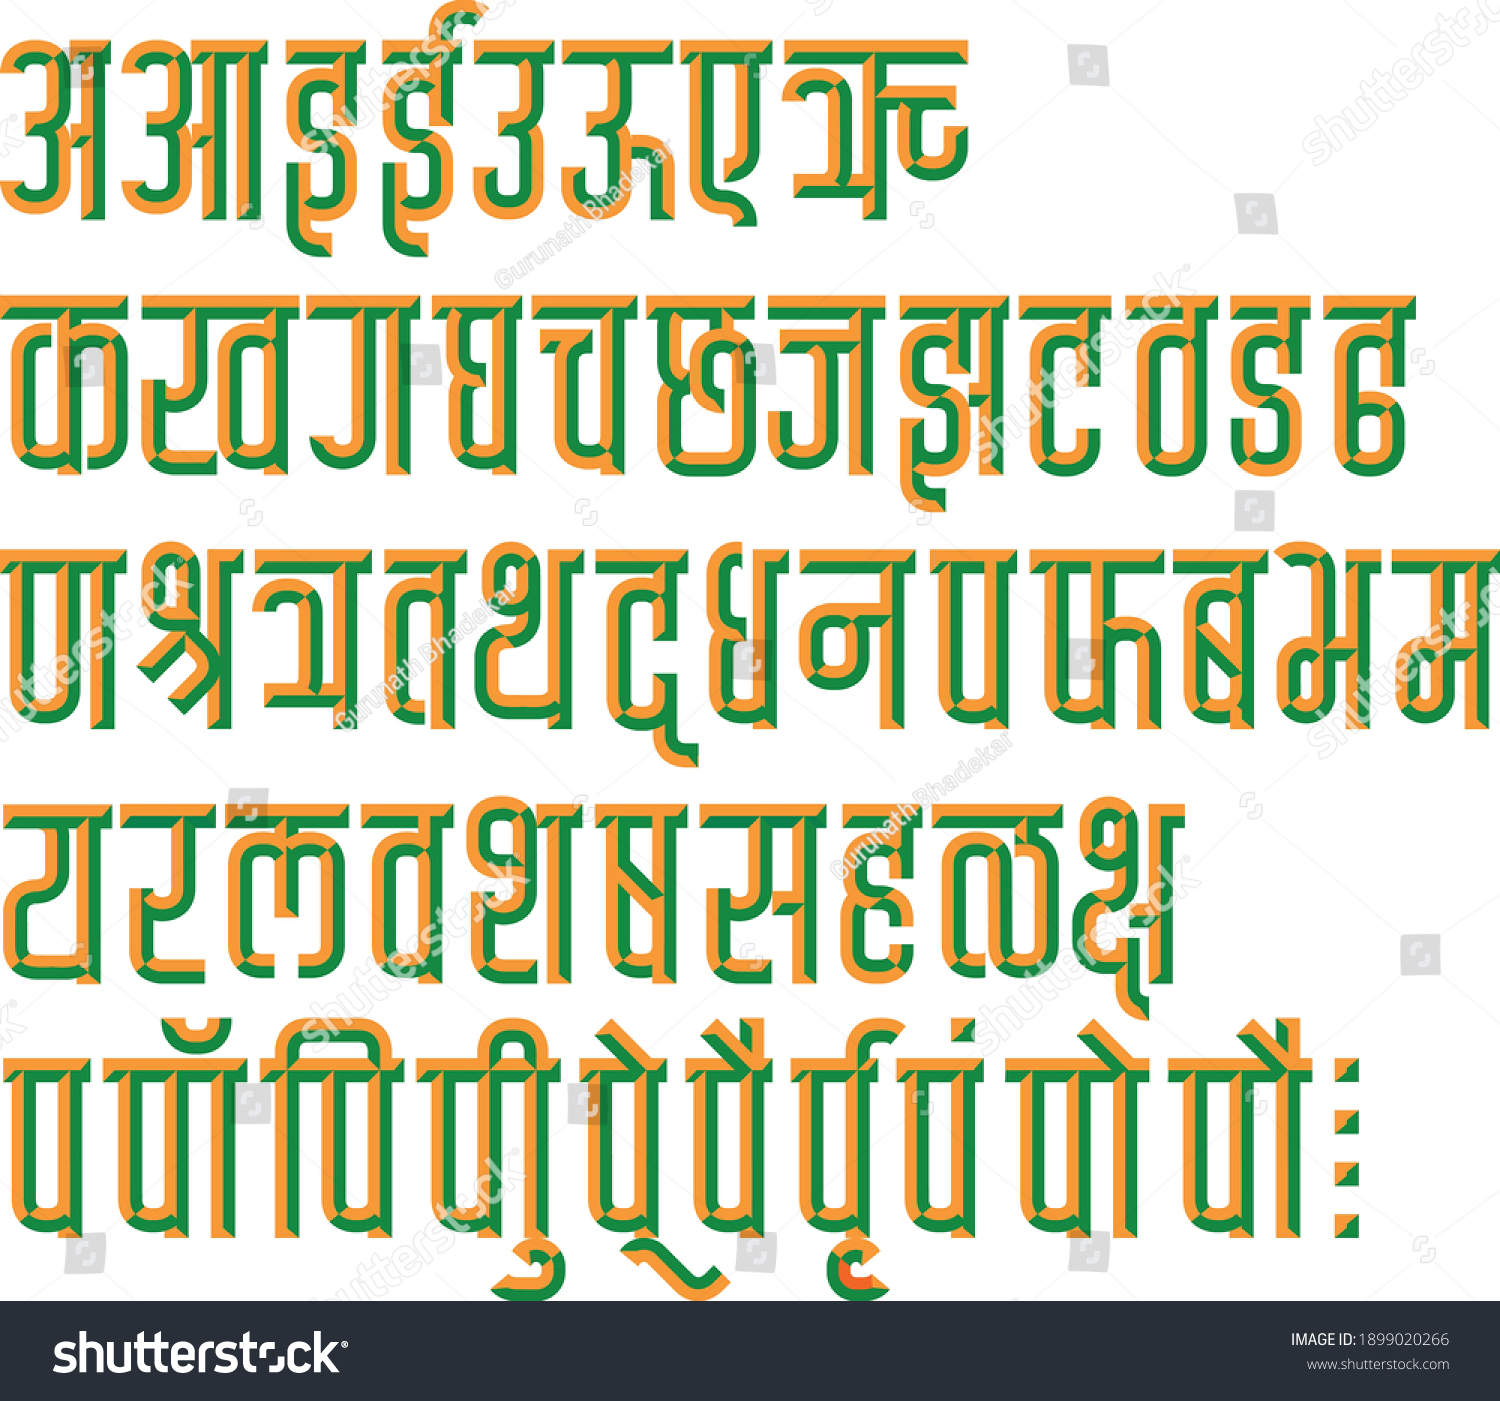 SVG of Handmade Devanagari chiseled font in Indian flag color, for Indian languages Hindi, Sanskrit, and Marathi Indian languages  svg